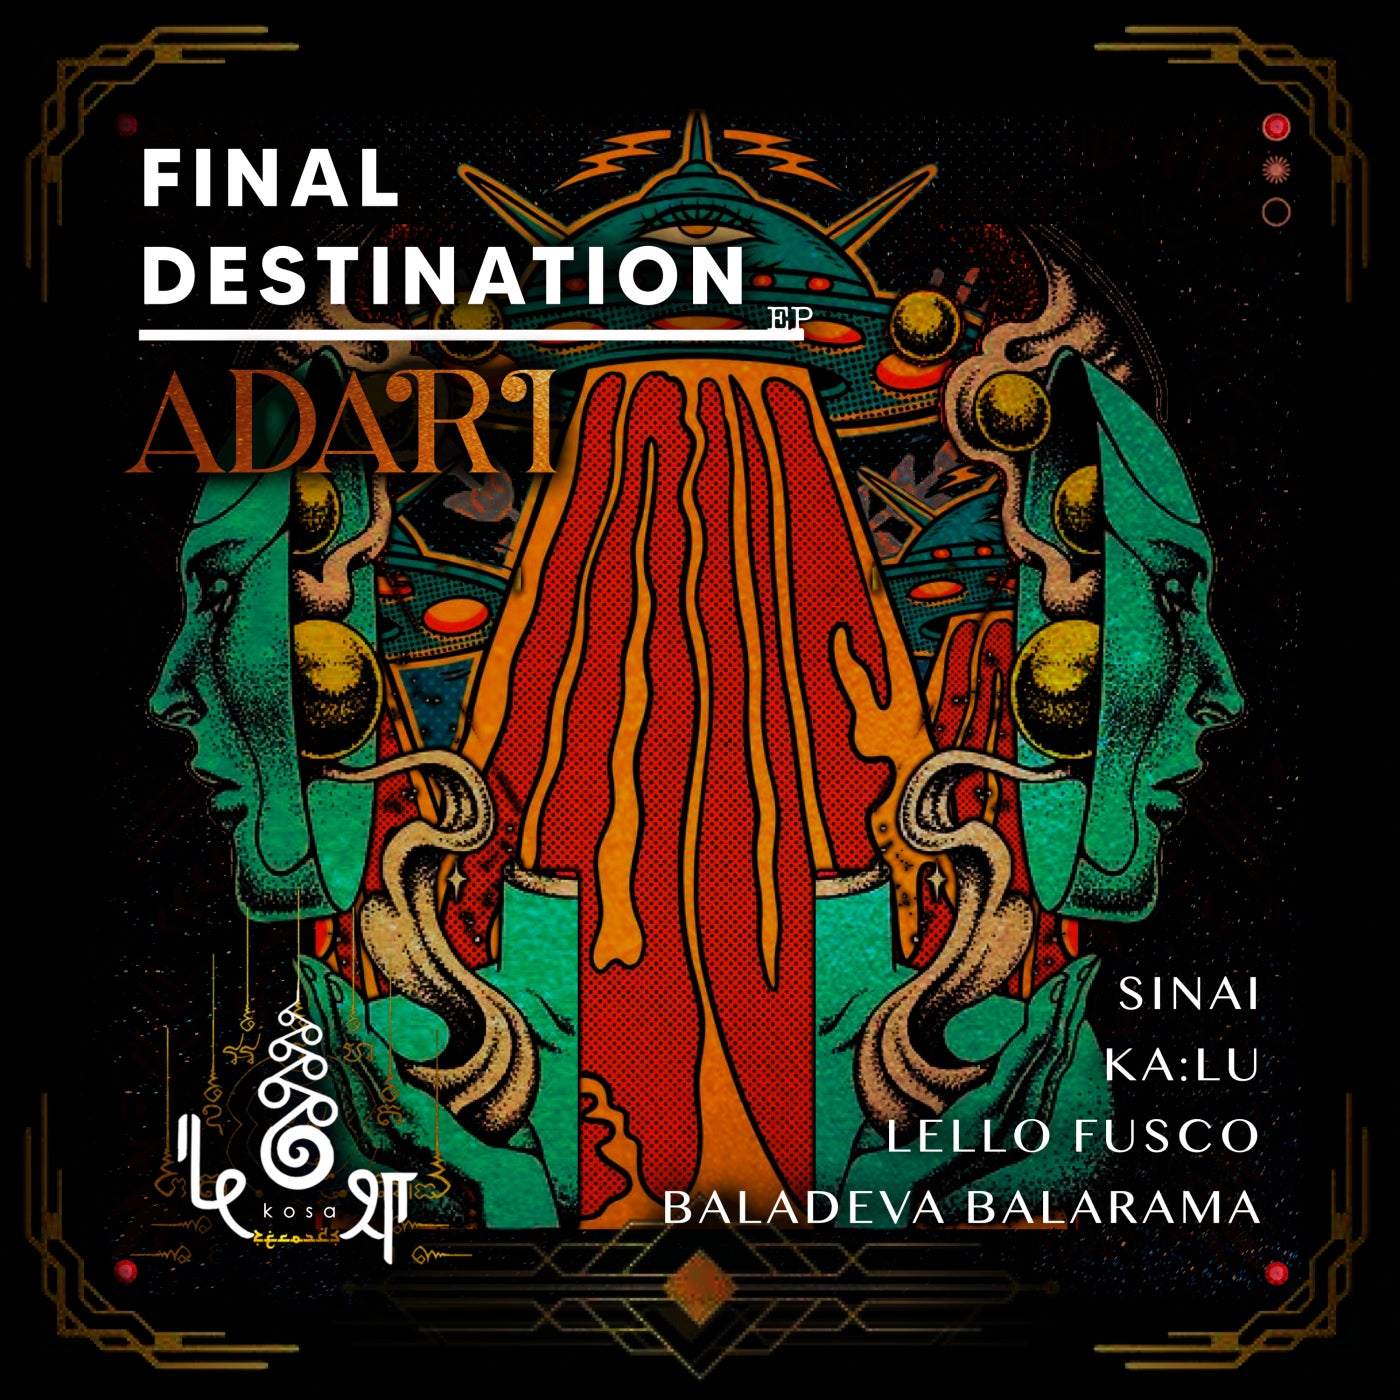 Cover - Adari, kośa records - Final Destination (Original Mix)